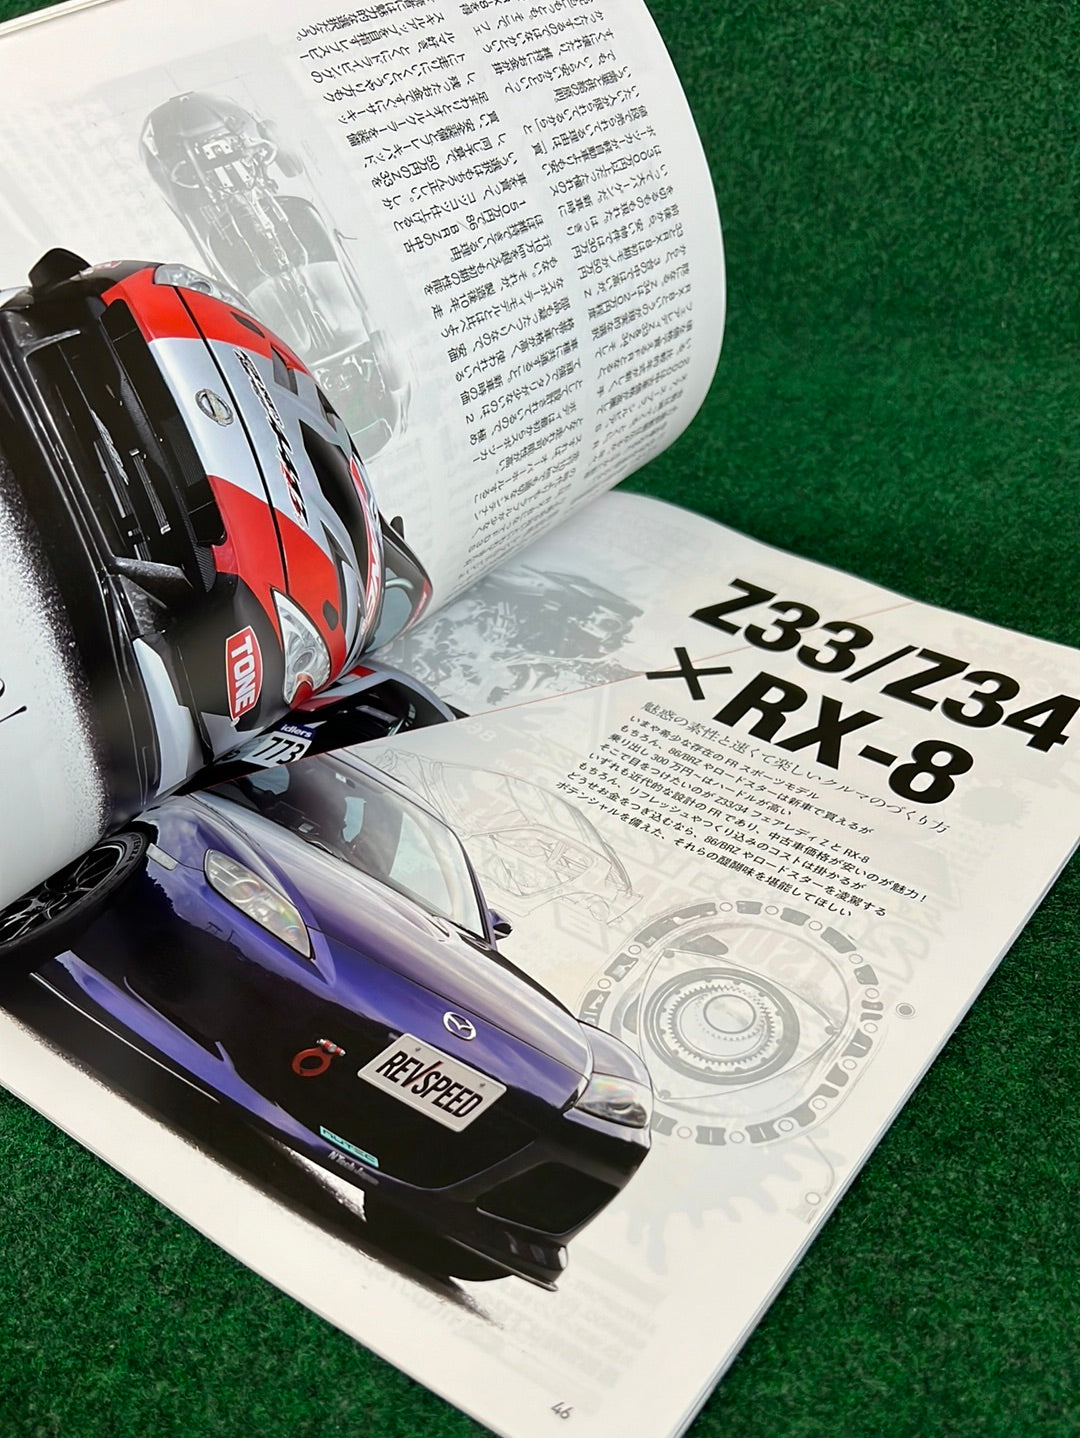 REVSPEED Magazine - Mazda RX7 RX8 - Set of 4